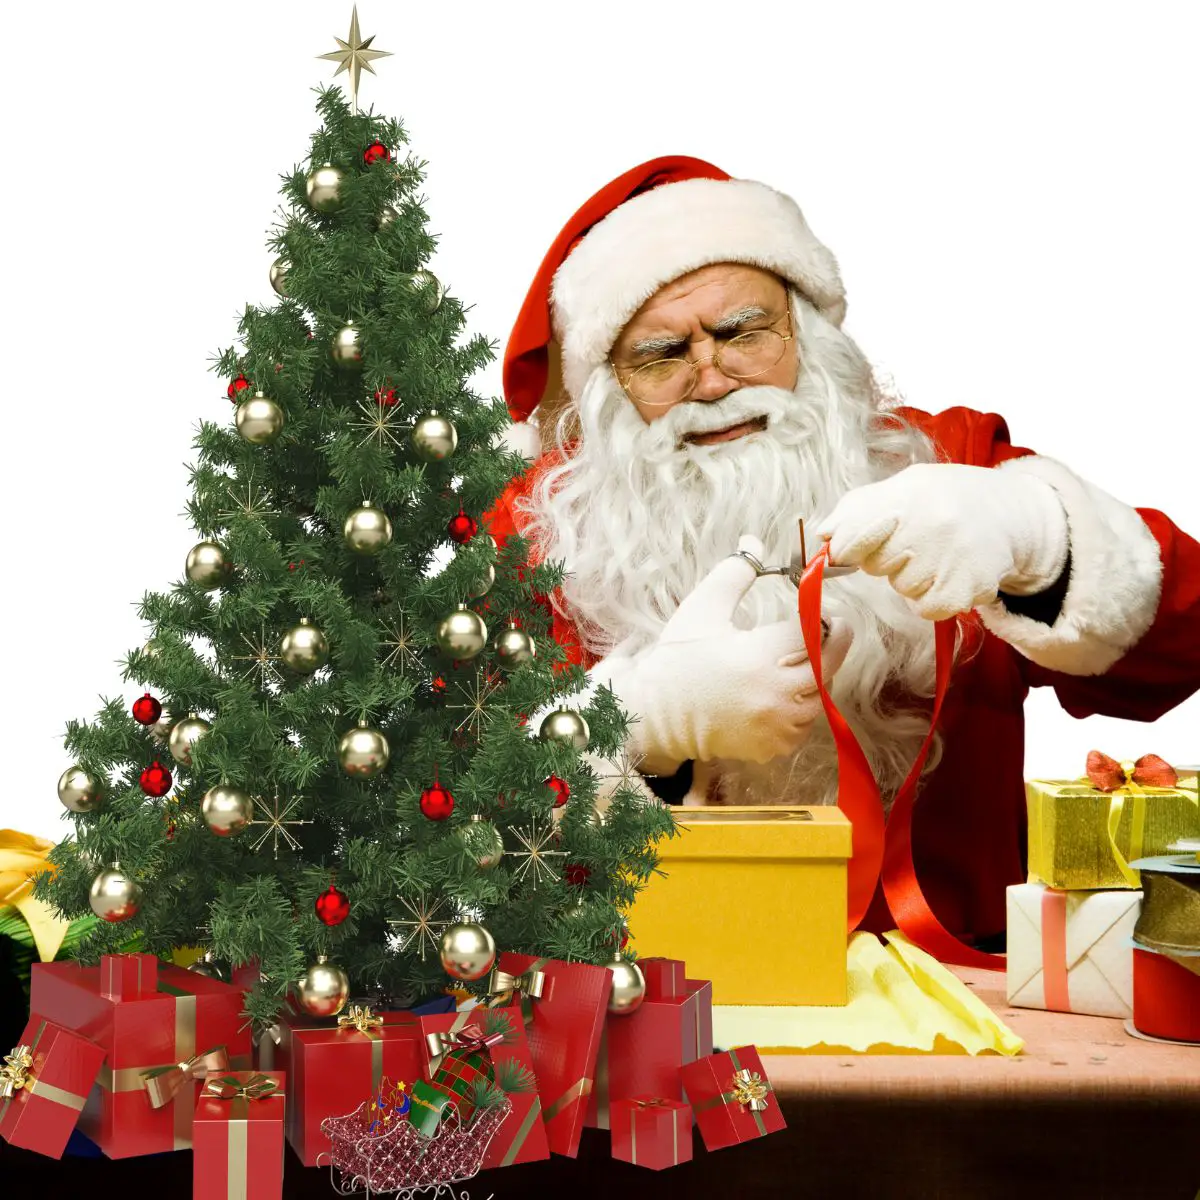 Weihnachtsmann verpack goldenes Geschenk mit roter Schleife. Im Vordergrund steht ein kleiner, geschmückter Weihnachtsbaum. Unter dem Weihnachtsbaum lieben rote Geschenke mit goldenen Schleifen.